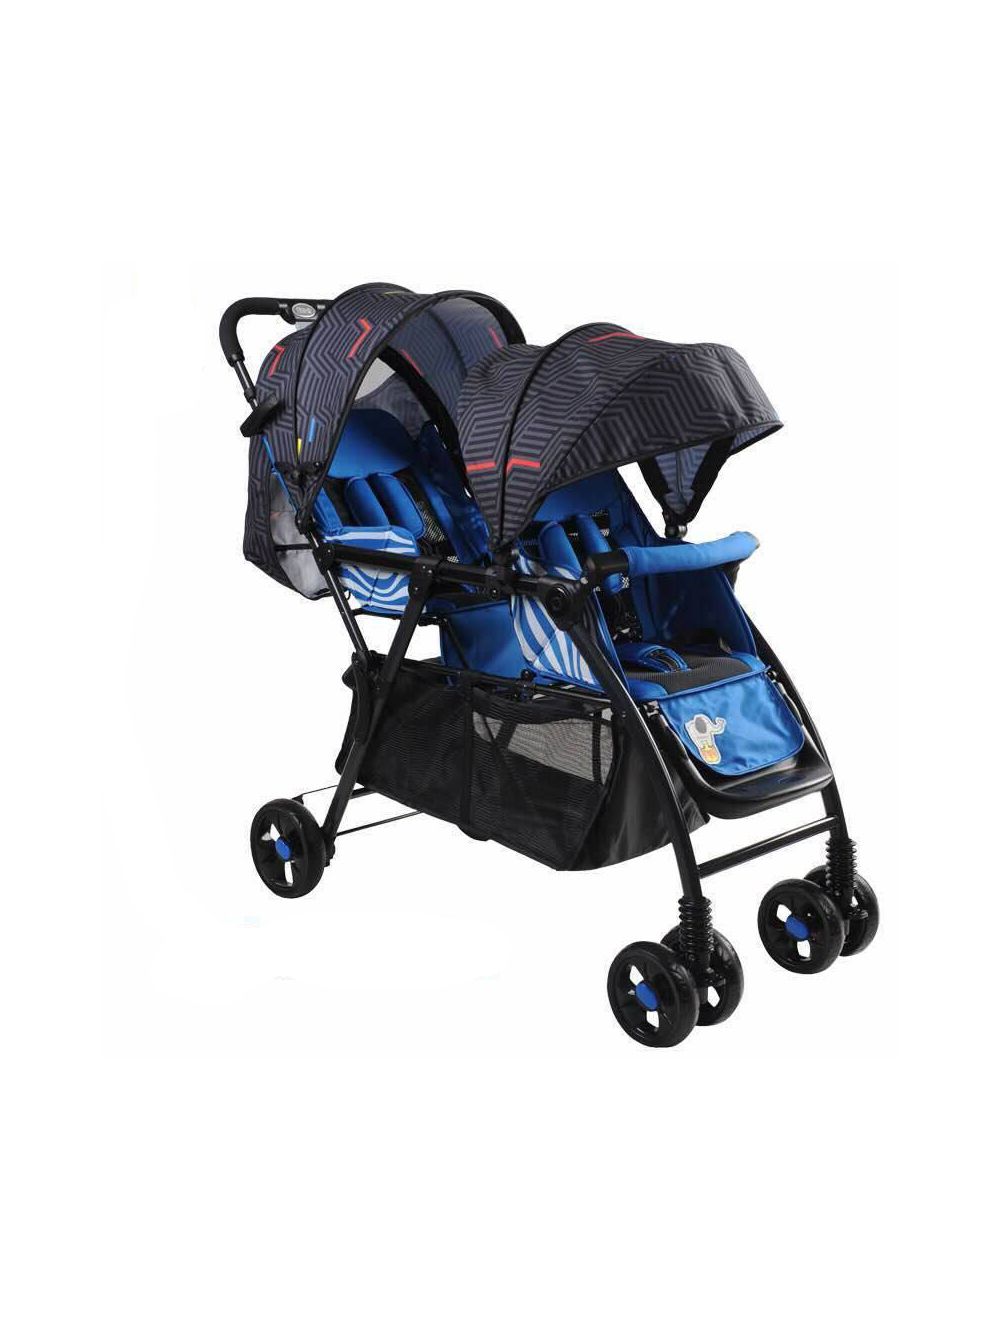 Joymaker Twin Baby Stroller Blue & Black